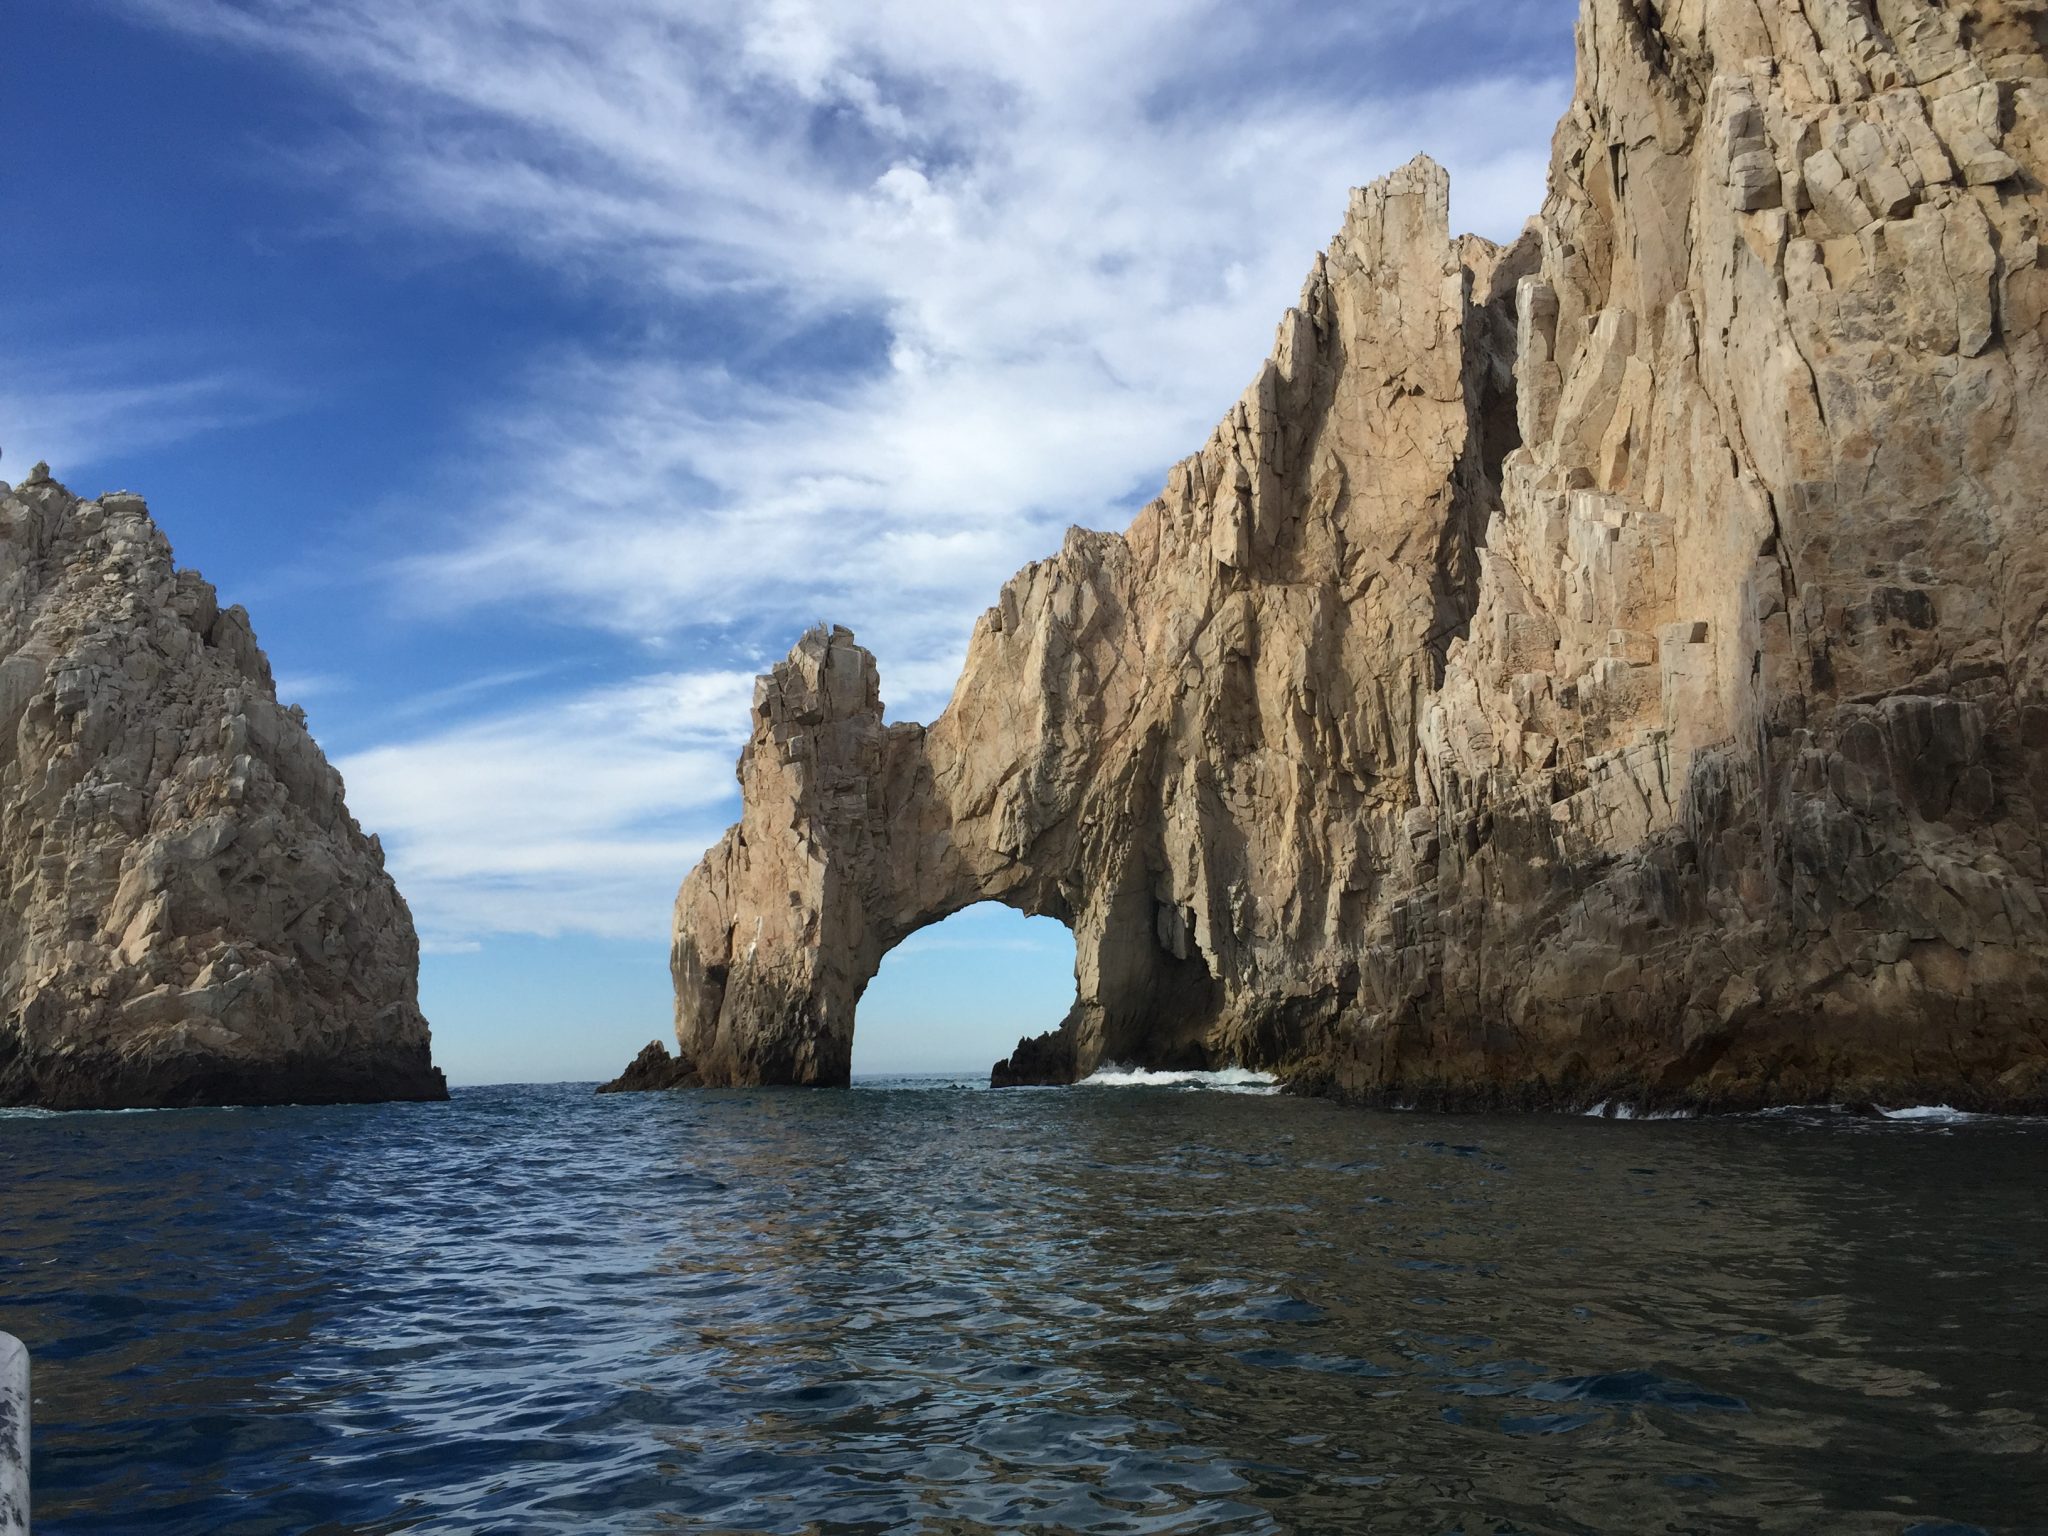 The Arch of Cabo San Lucas – Mexico